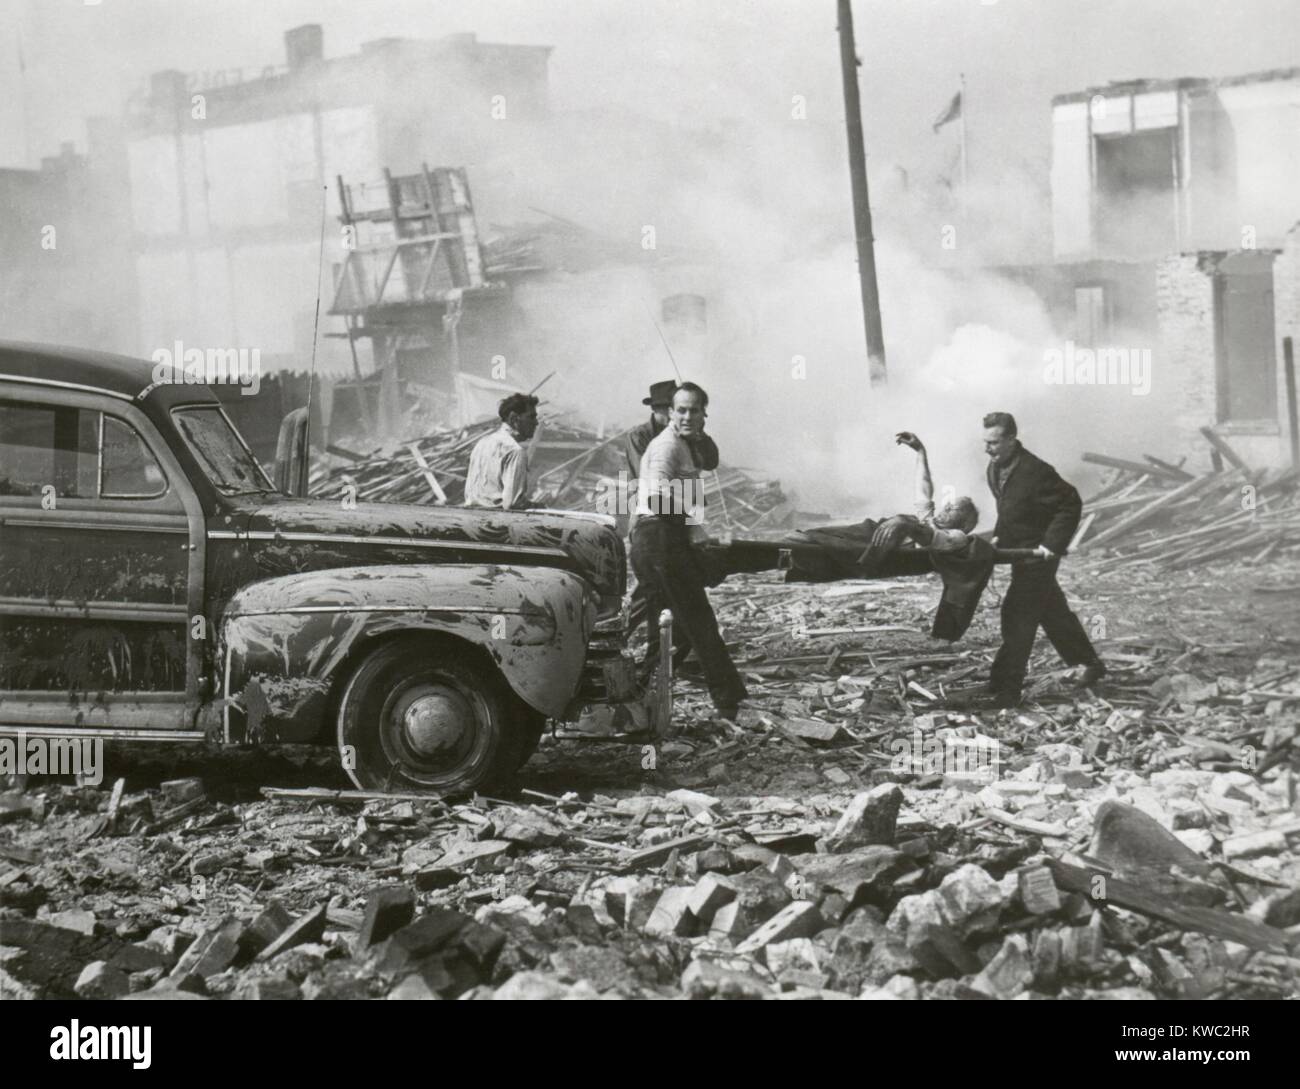 Encore un film de l'armée américaine film sur une attaque hypothétique à l'aide d'une bombe atomique, novembre 1948. Montre toujours les sauveteurs sont montré dépose les blessés de foyers brisés. (BSLOC 2015 2 31) Banque D'Images